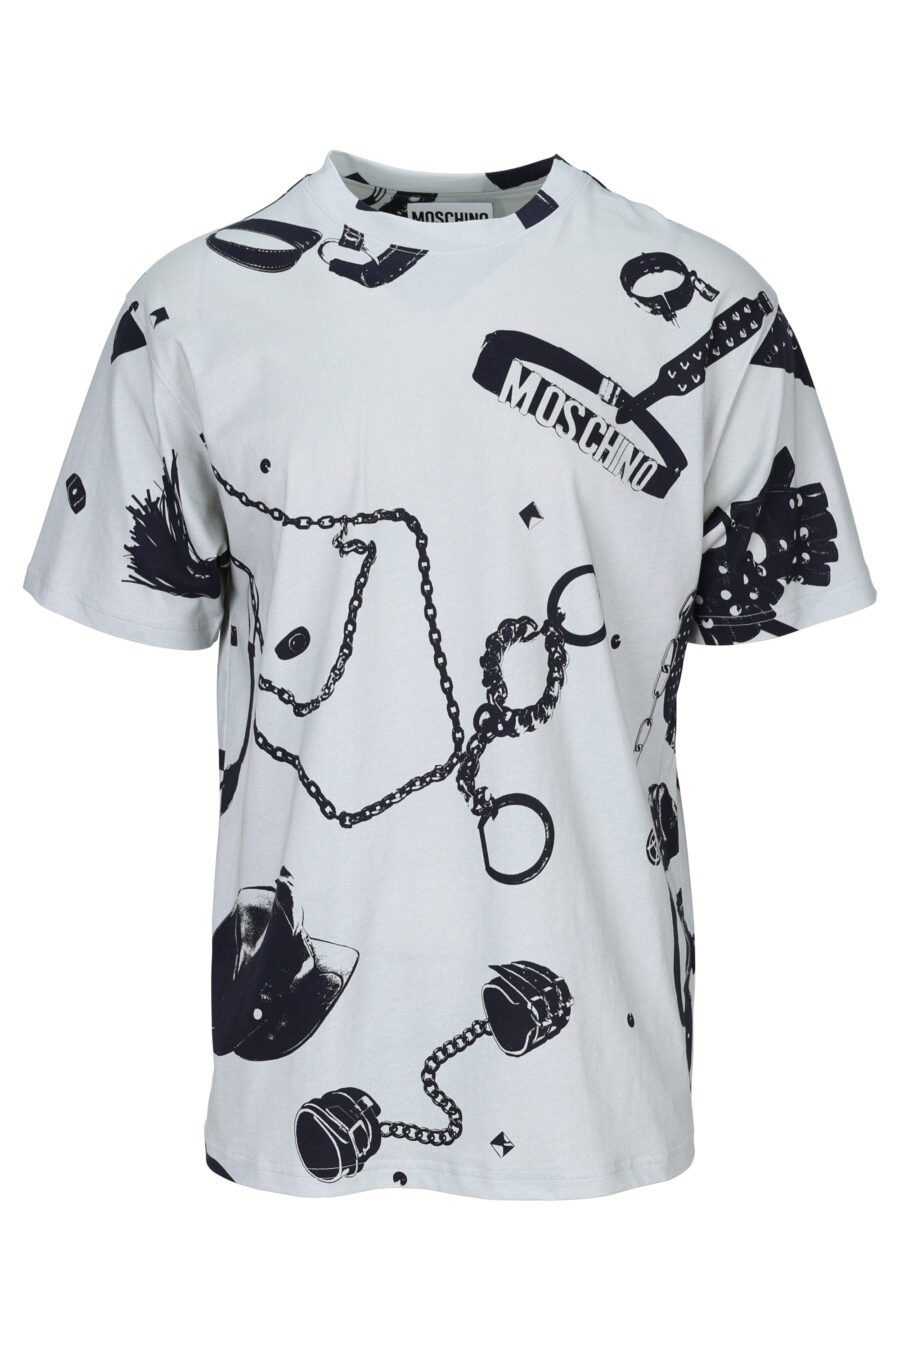 Camiseta gris con logo estampado negro de cadenas - 889316725339